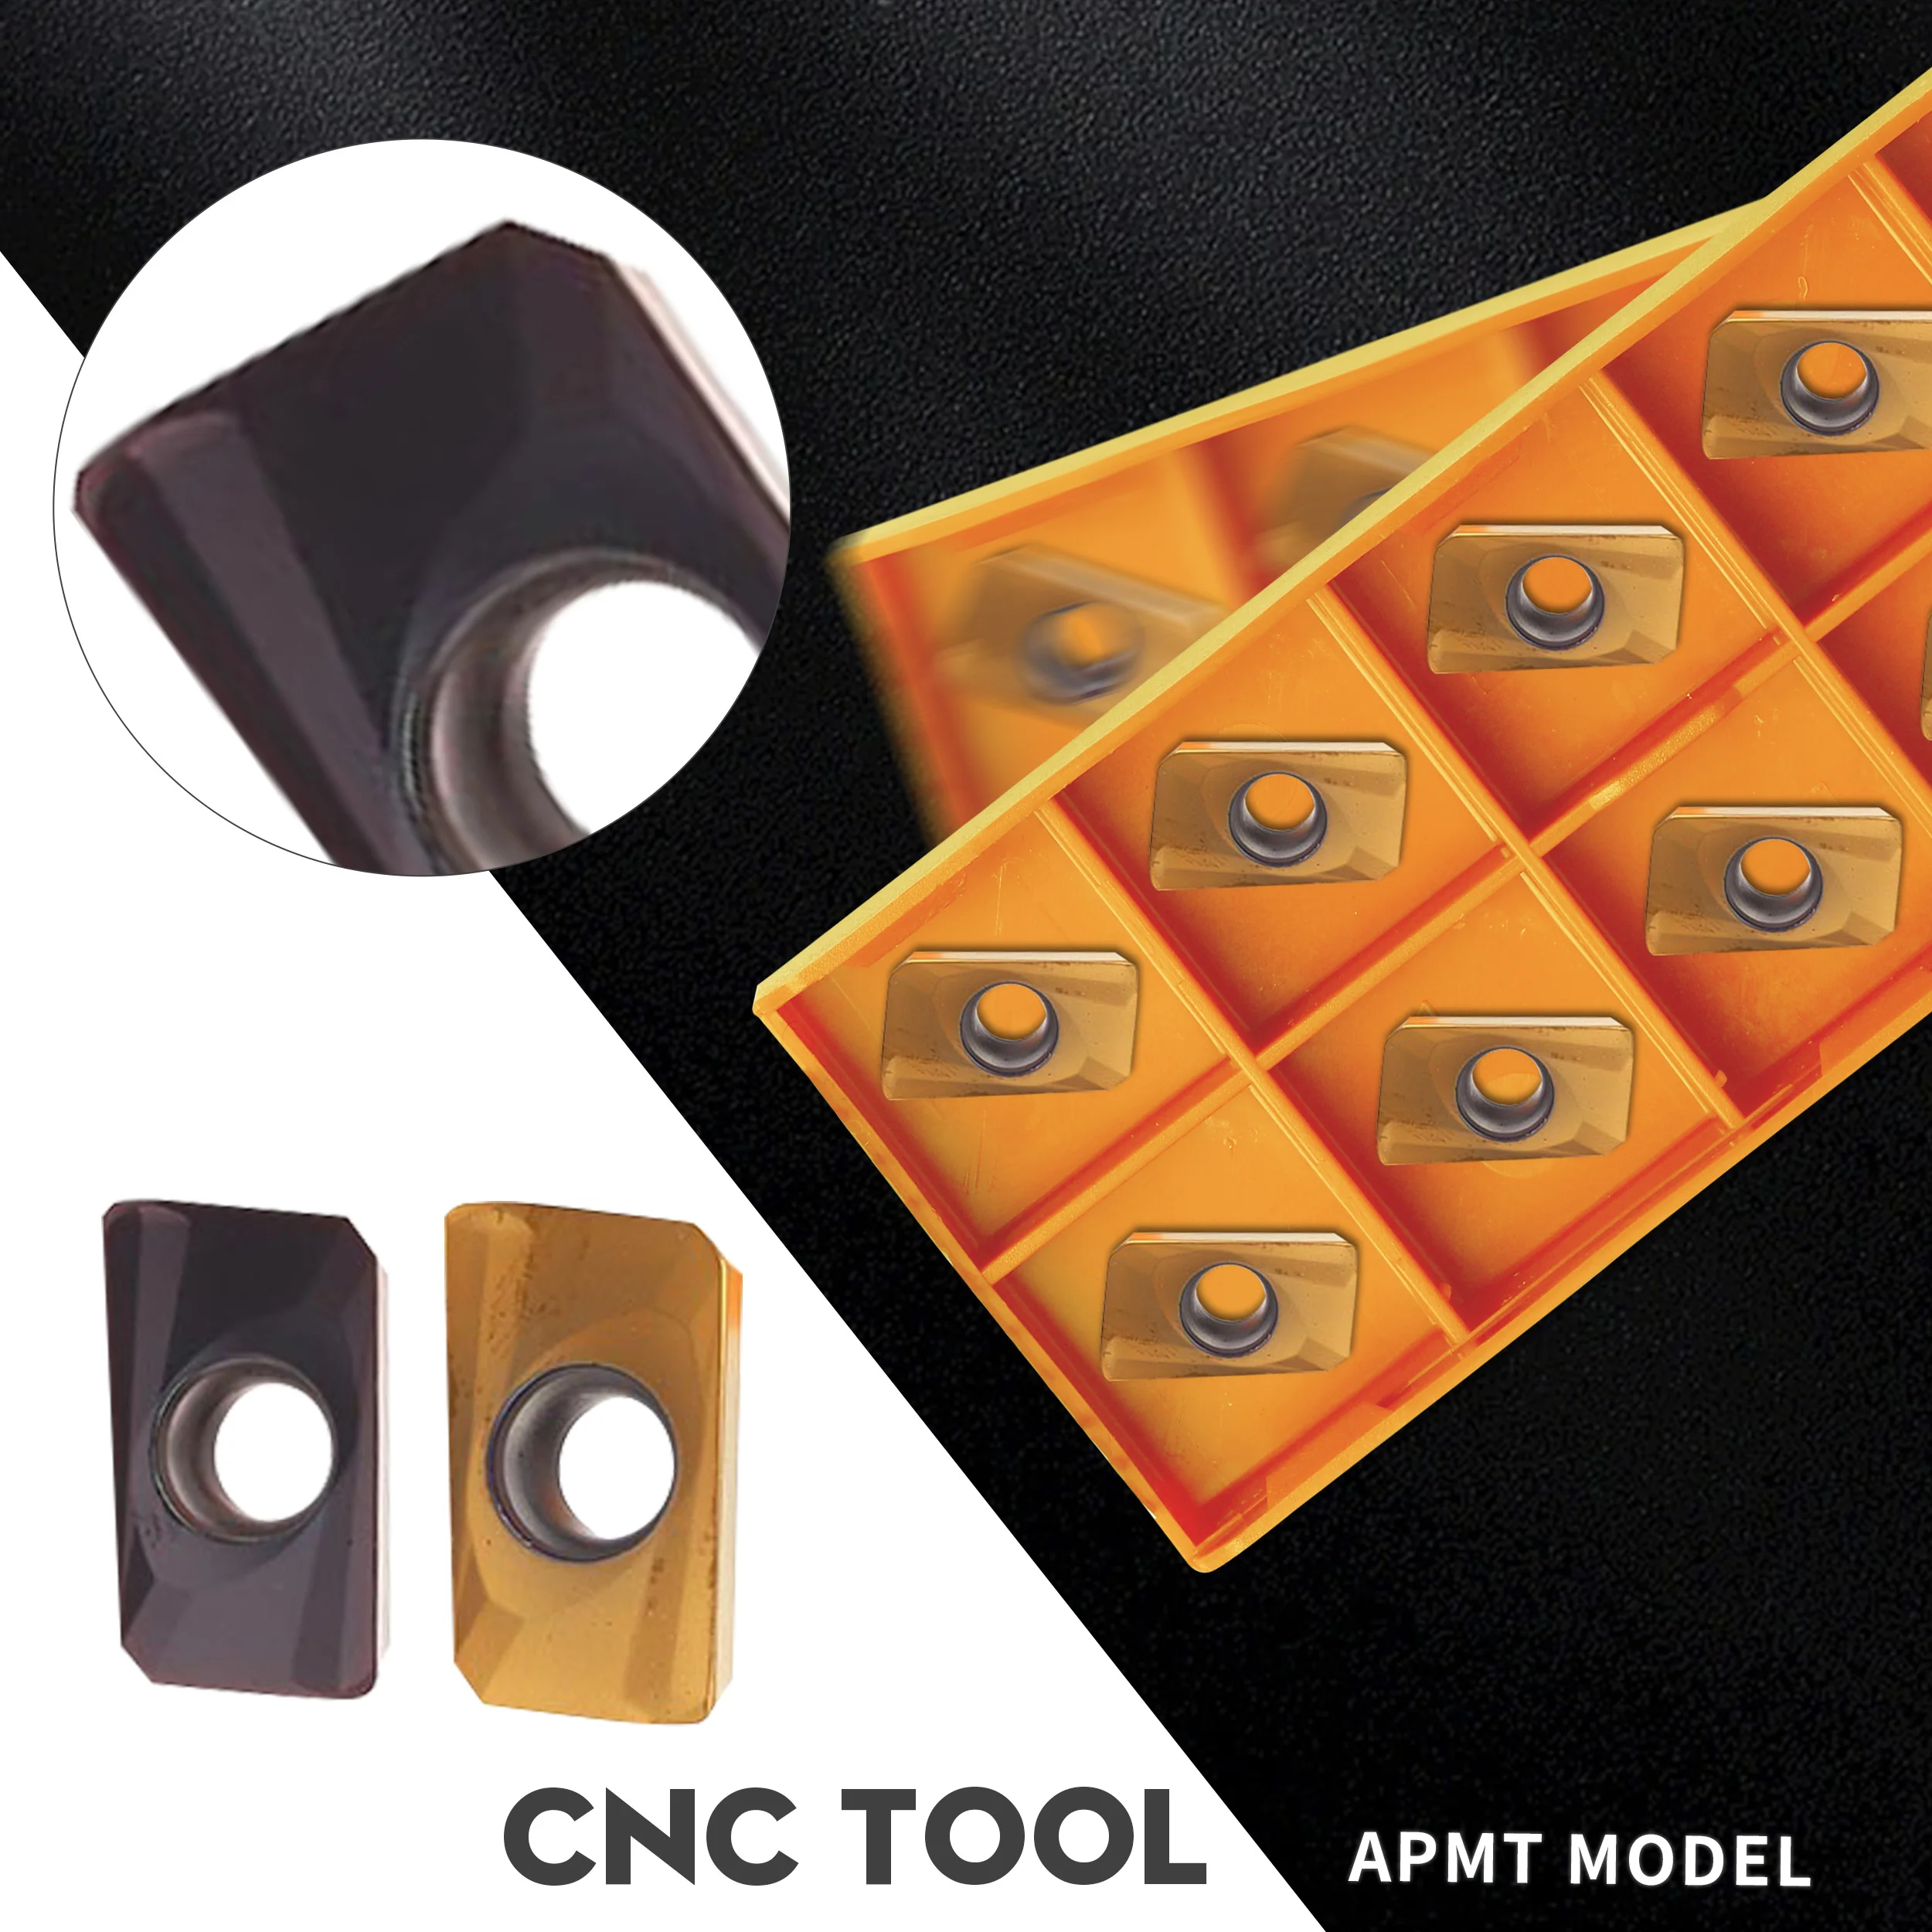 APMT1135-H2 VP15TF UE6020 US735 APMT1604-H2 VP15TF UE6020 US735 Milling inserts CNC lathe cutting inserts Carbide milling cutter